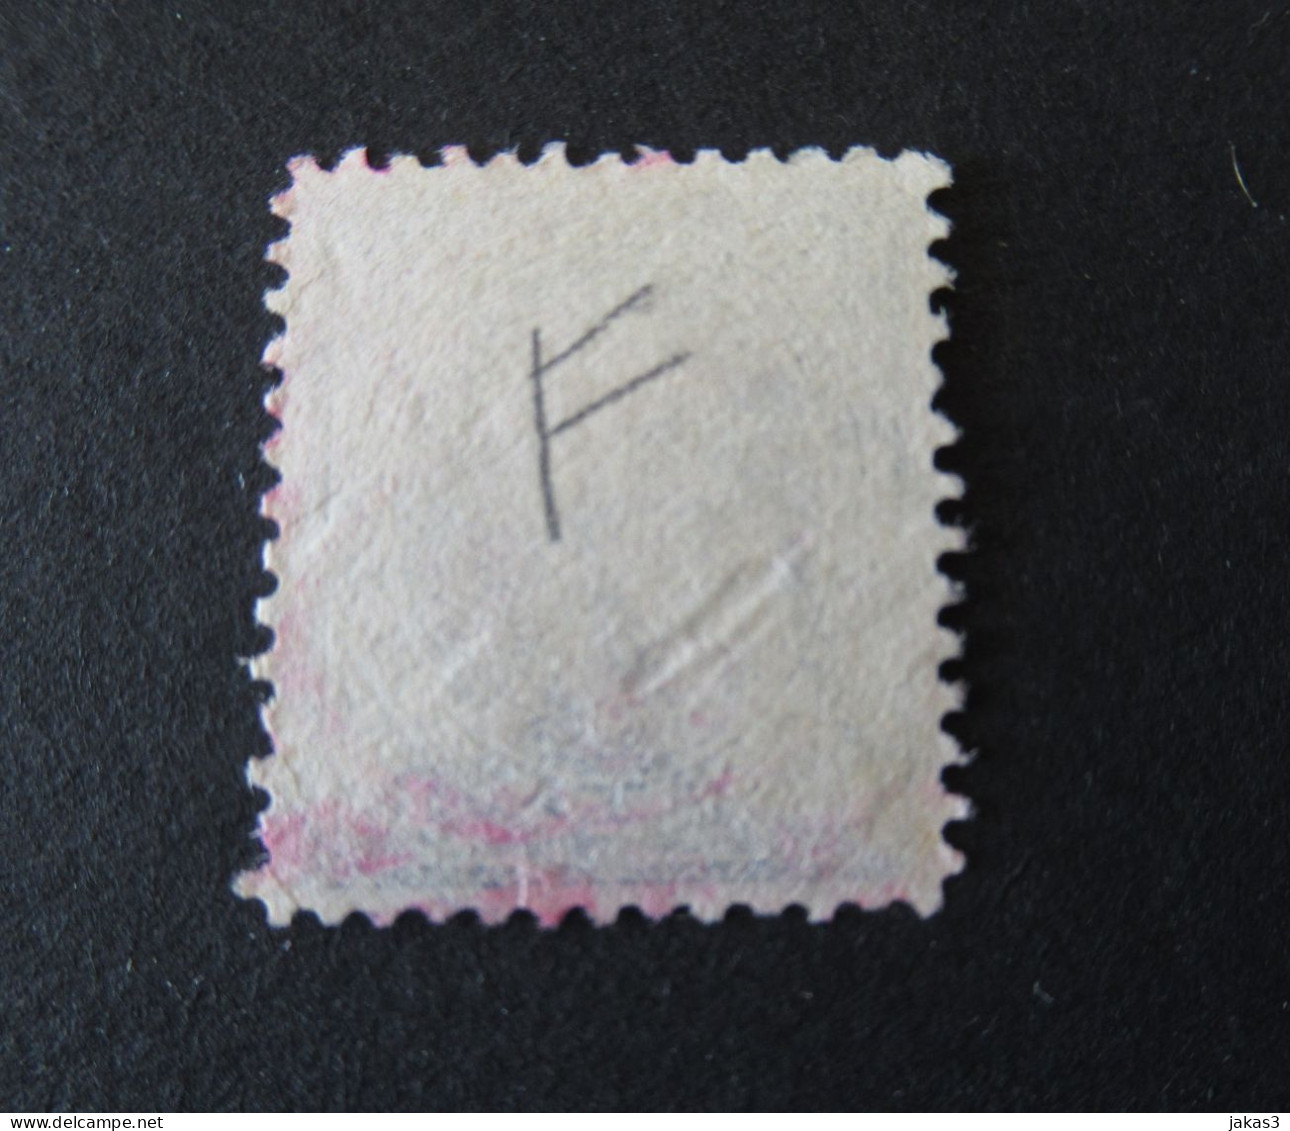 ETATS UNIS - USA - TIMBRE - YT N° 105 OBLITÉRÉ - BEL ETAT - BELLE COTE - Used Stamps